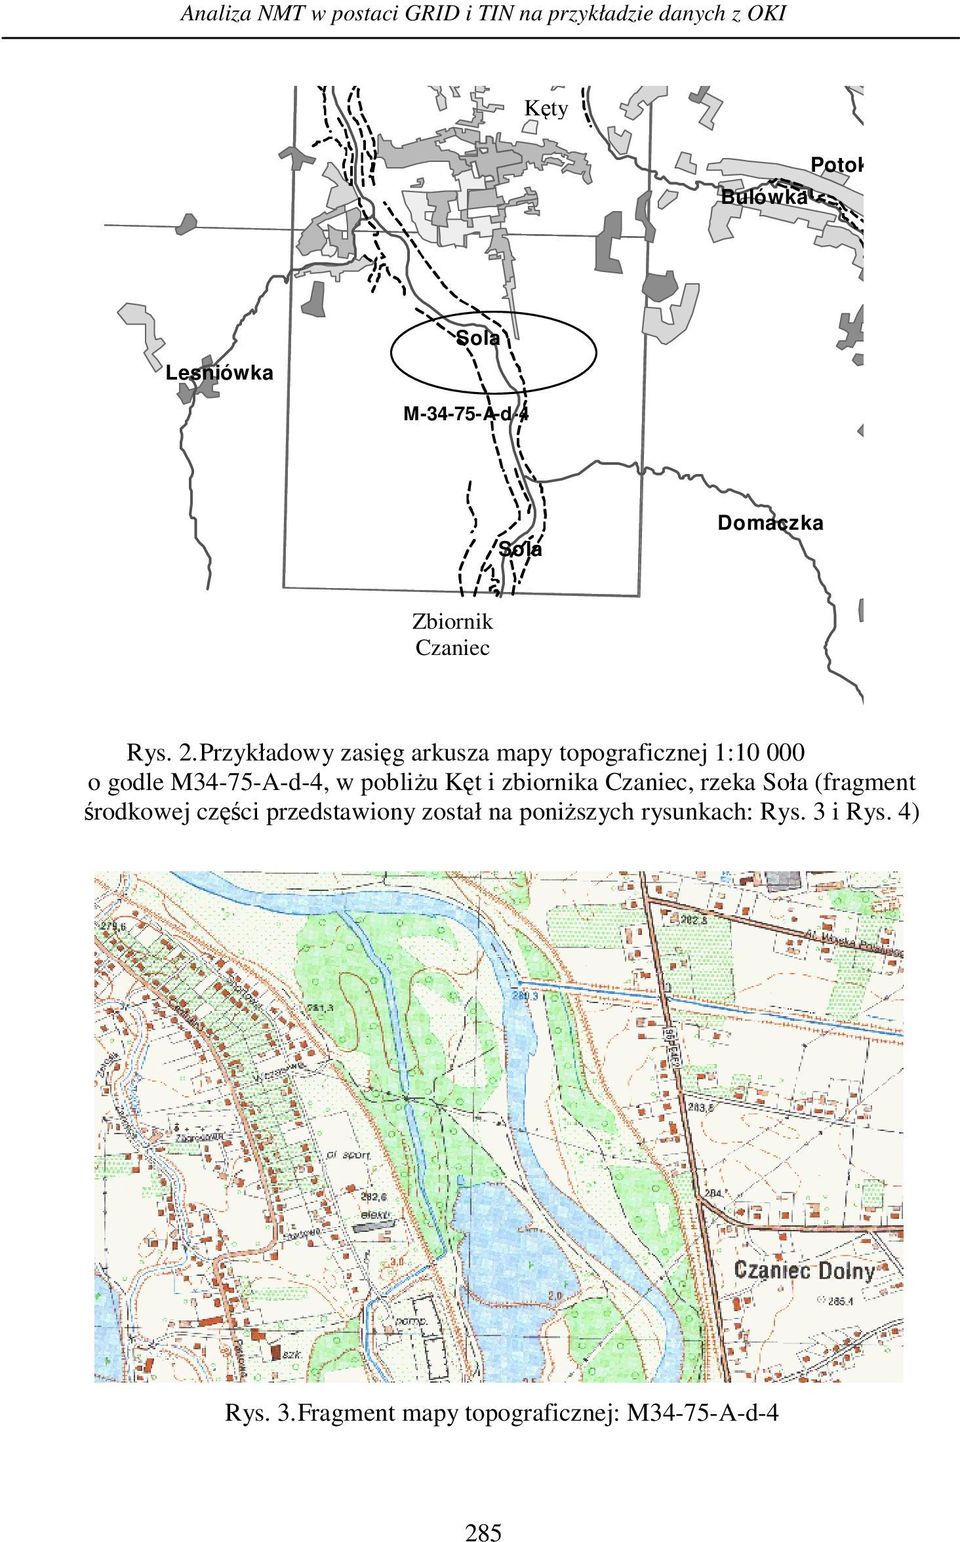 Przykładowy zasięg arkusza mapy topograficznej 1:10 000 o godle M34-75-A-d-4, w pobliżu Kęt i zbiornika